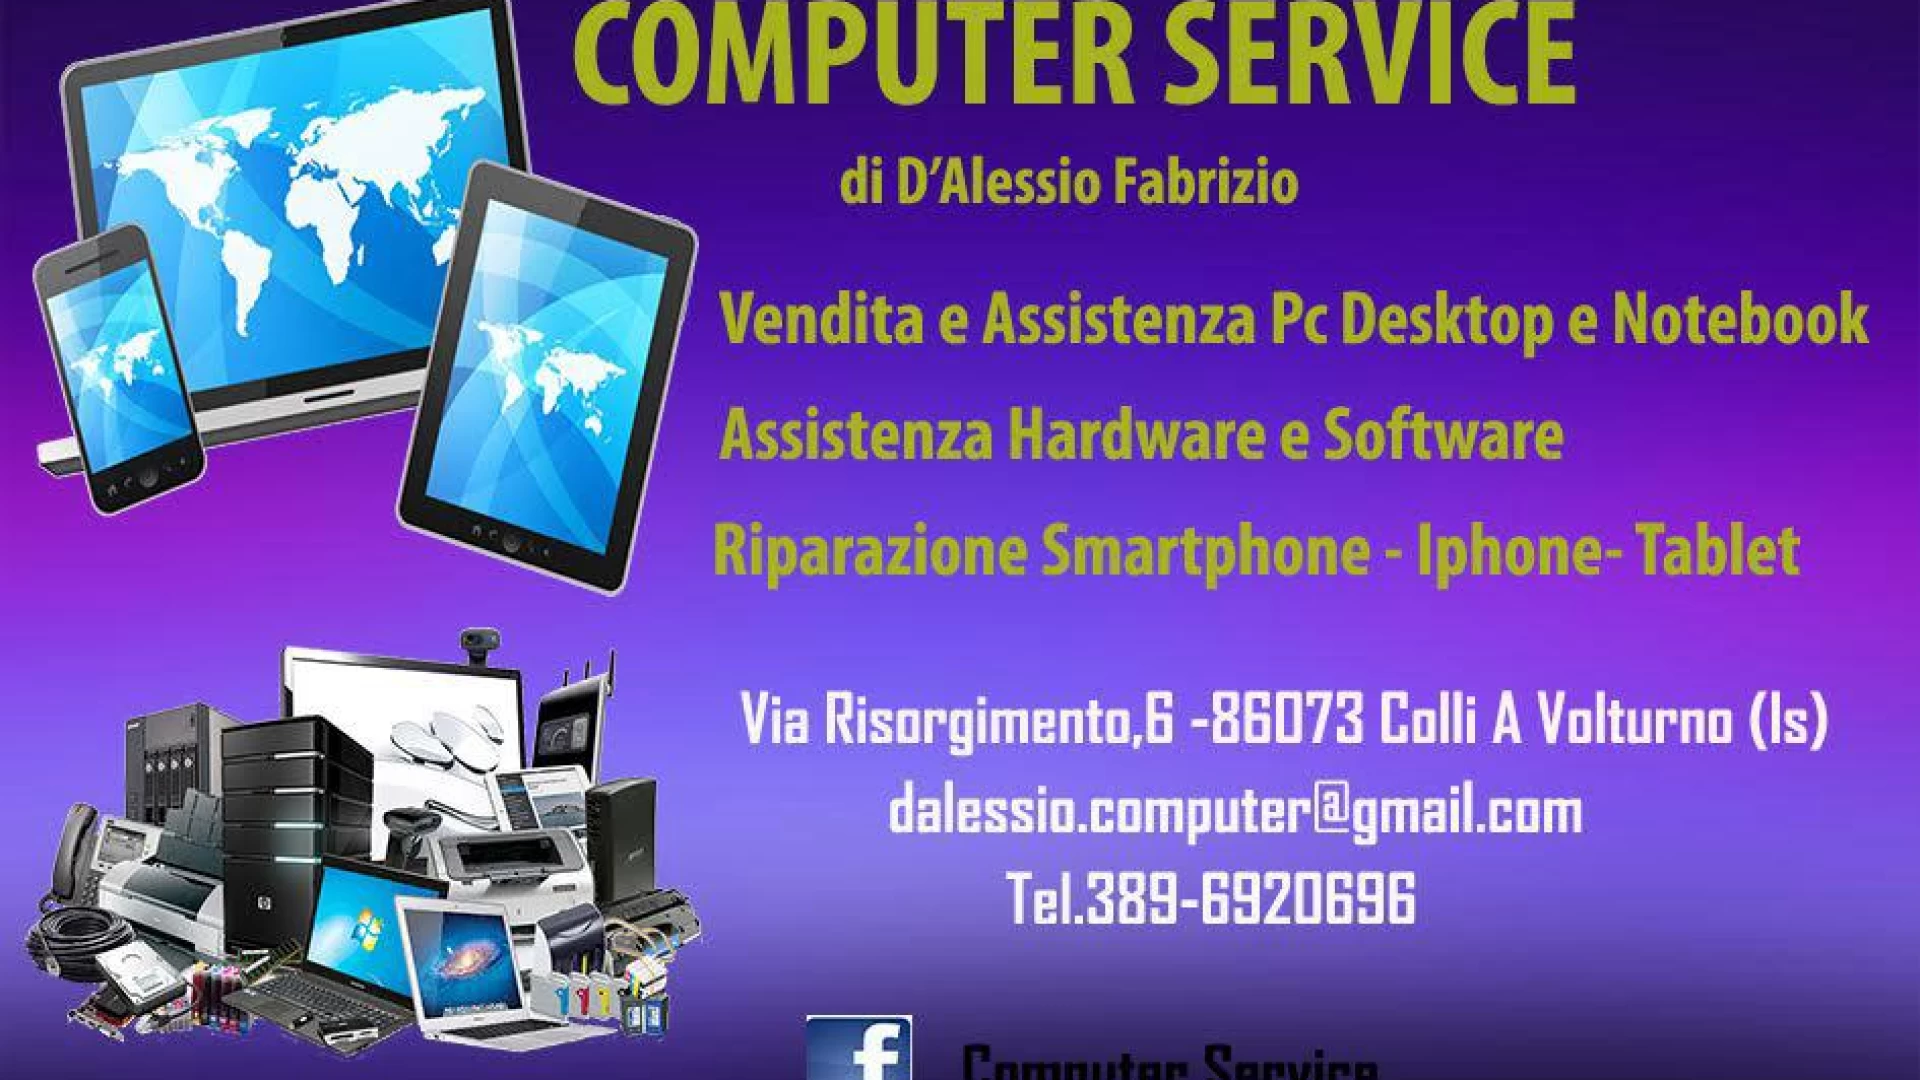 Colli a Volturno: Computer Service di D’Alessio Fabrizio vi attende con tante novità tecnologiche e soluzioni interessanti per le vostre postazioni di lavoro.